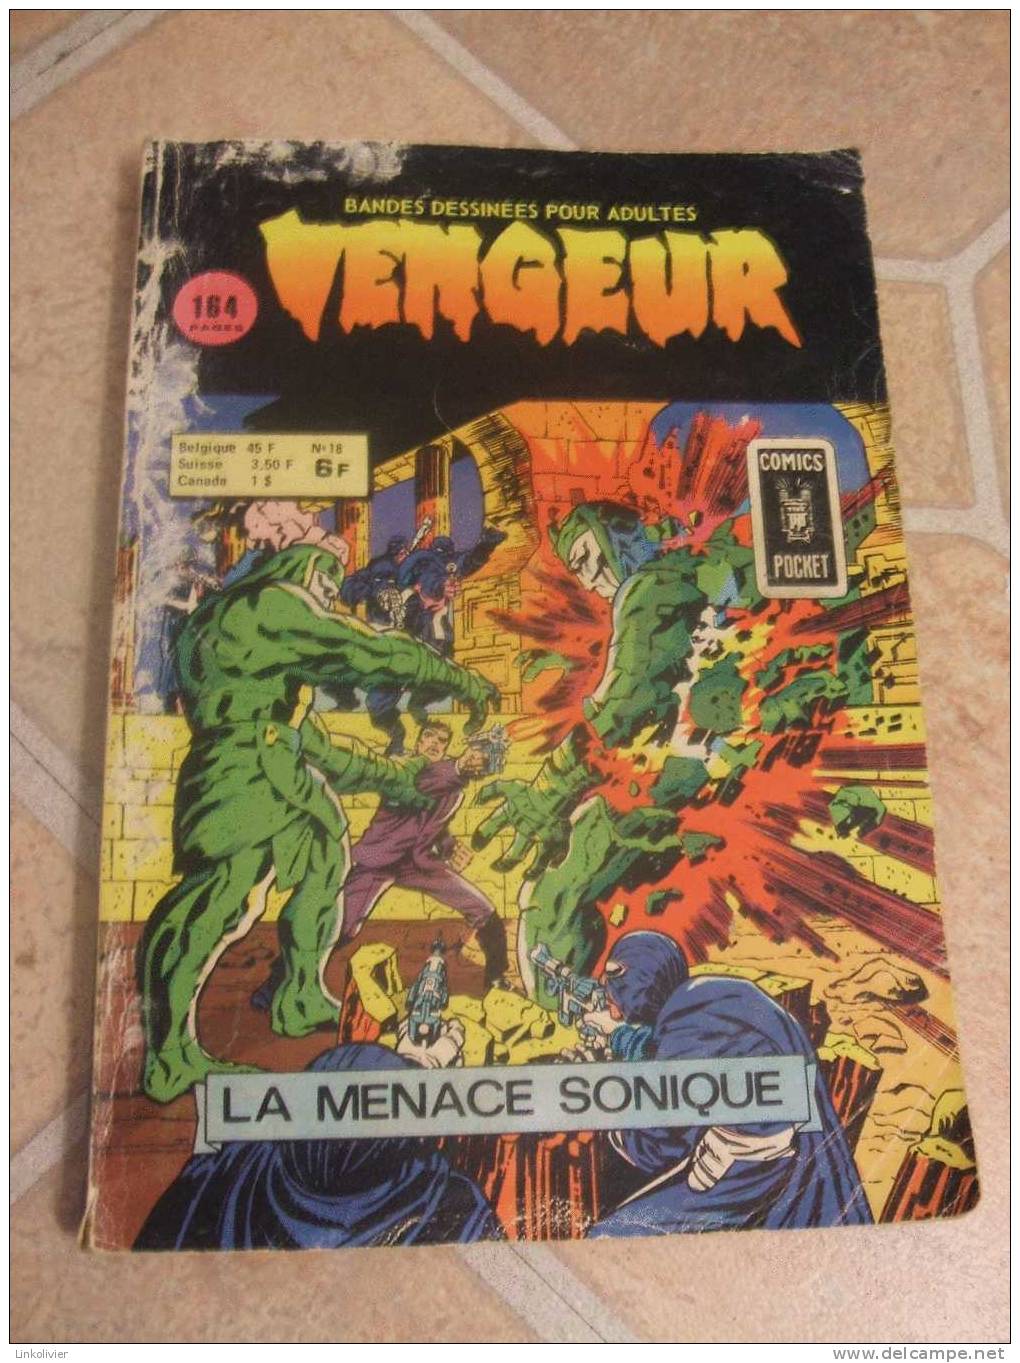 VENGEUR "LA MENACE SONIQUE" N°18 Comics Pocket ARTIMA 1976 - Vengeur